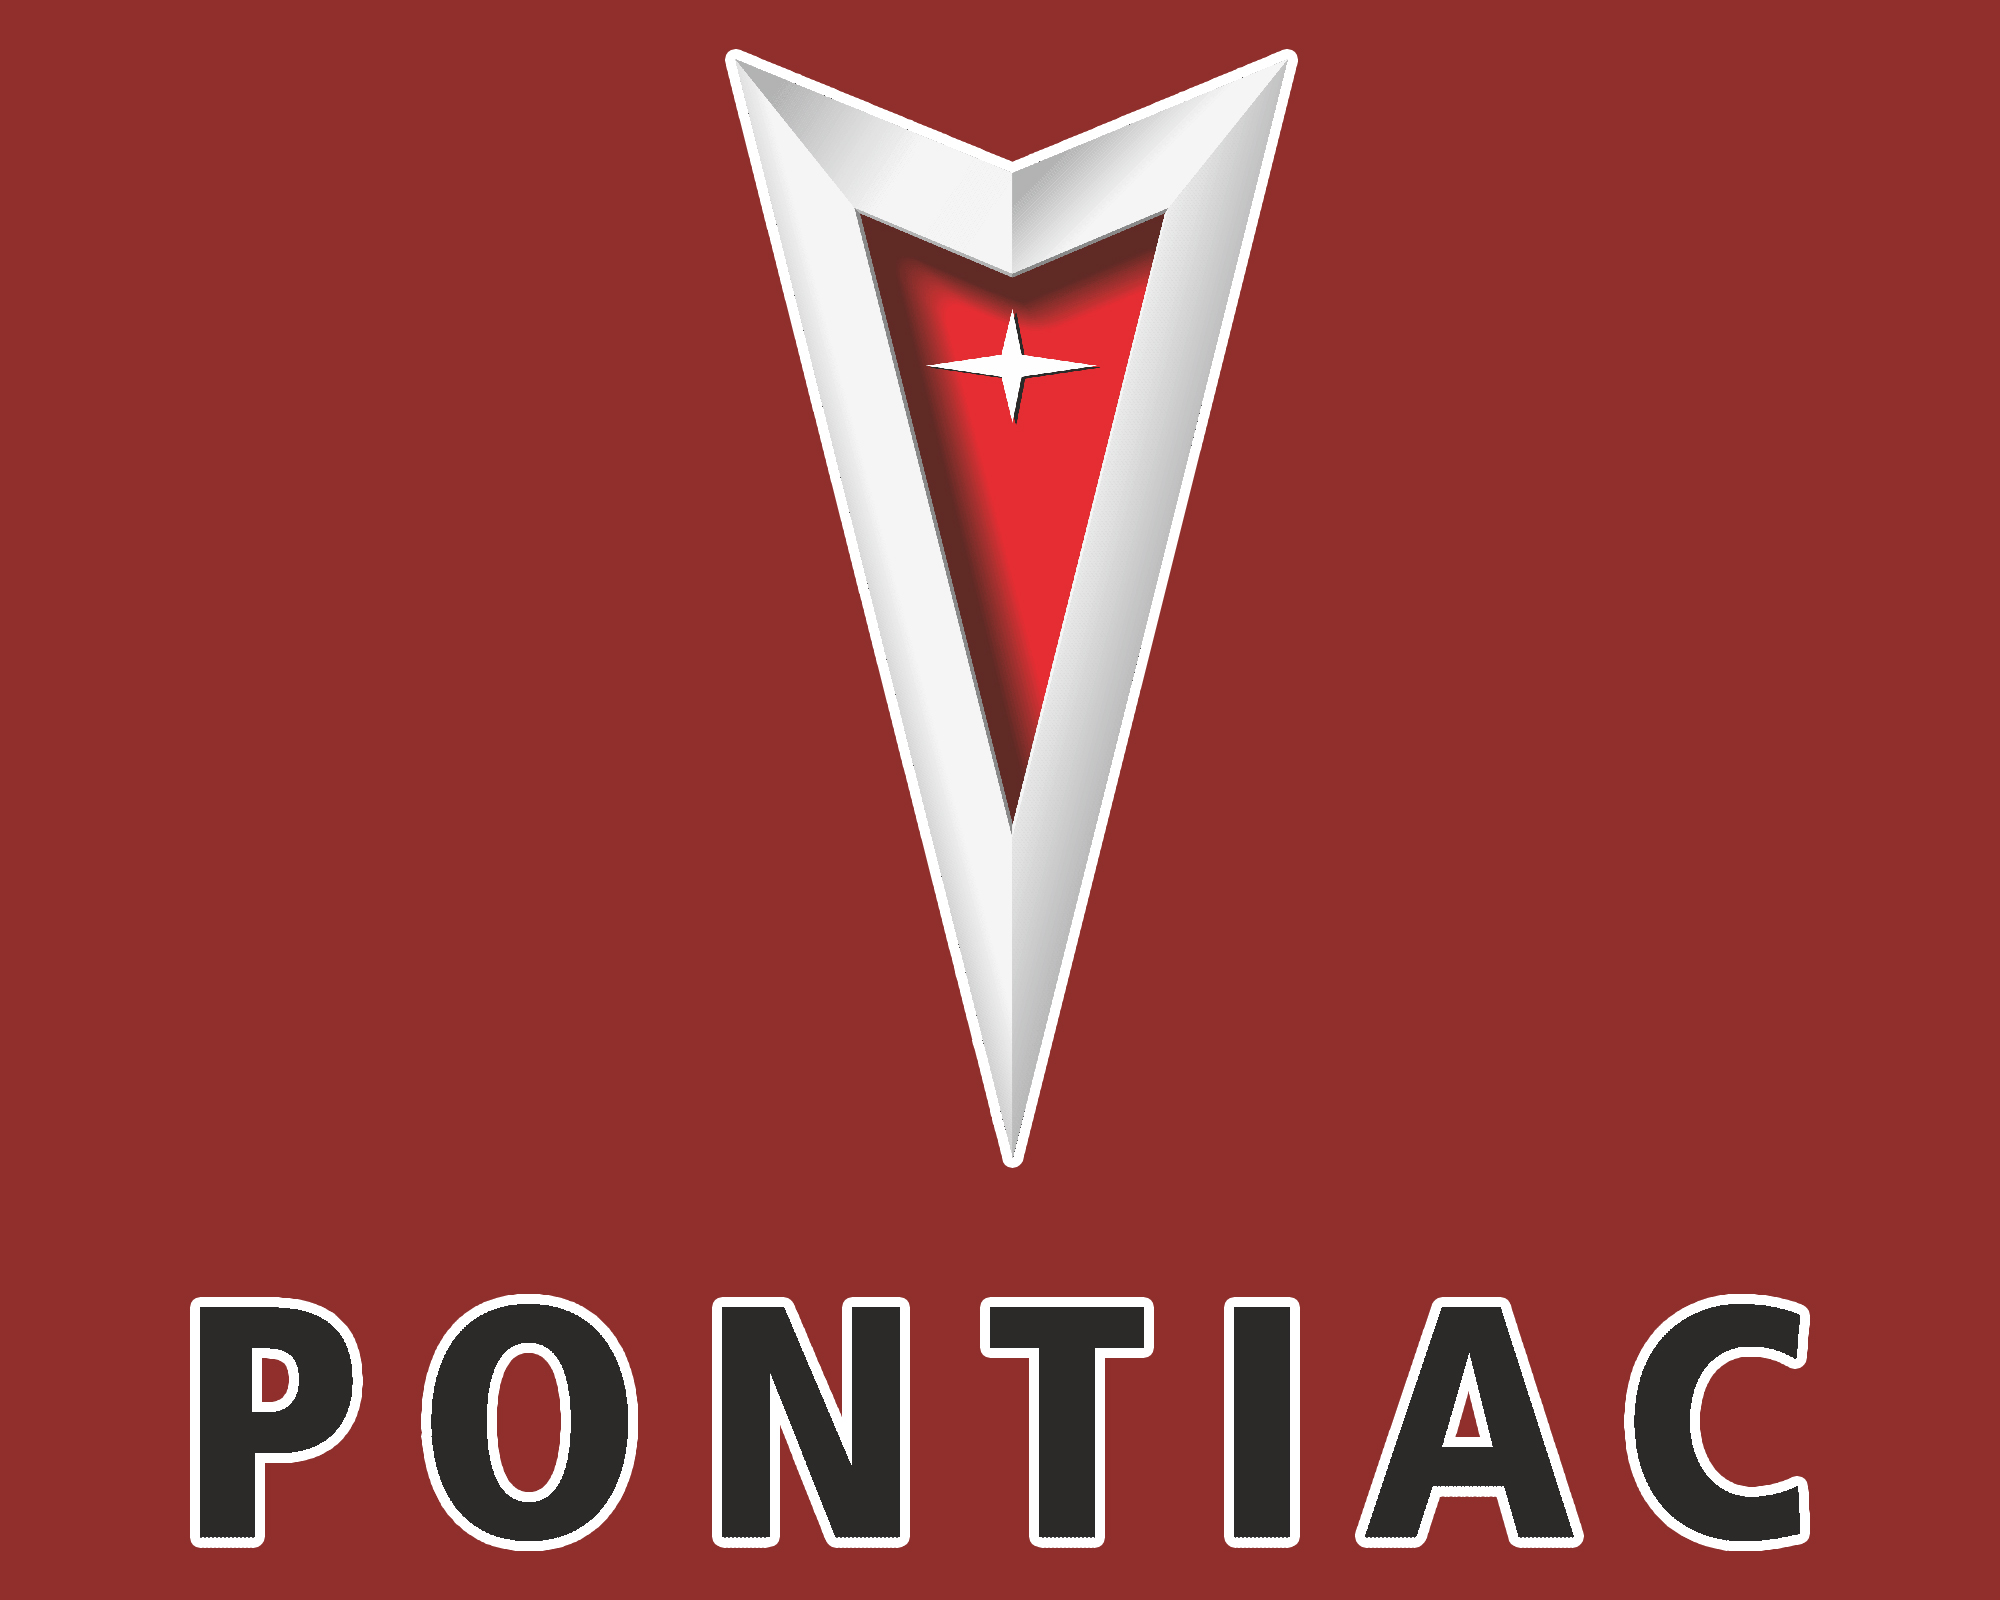 Pontiac Logo Meaning and History [Pontiac symbol]